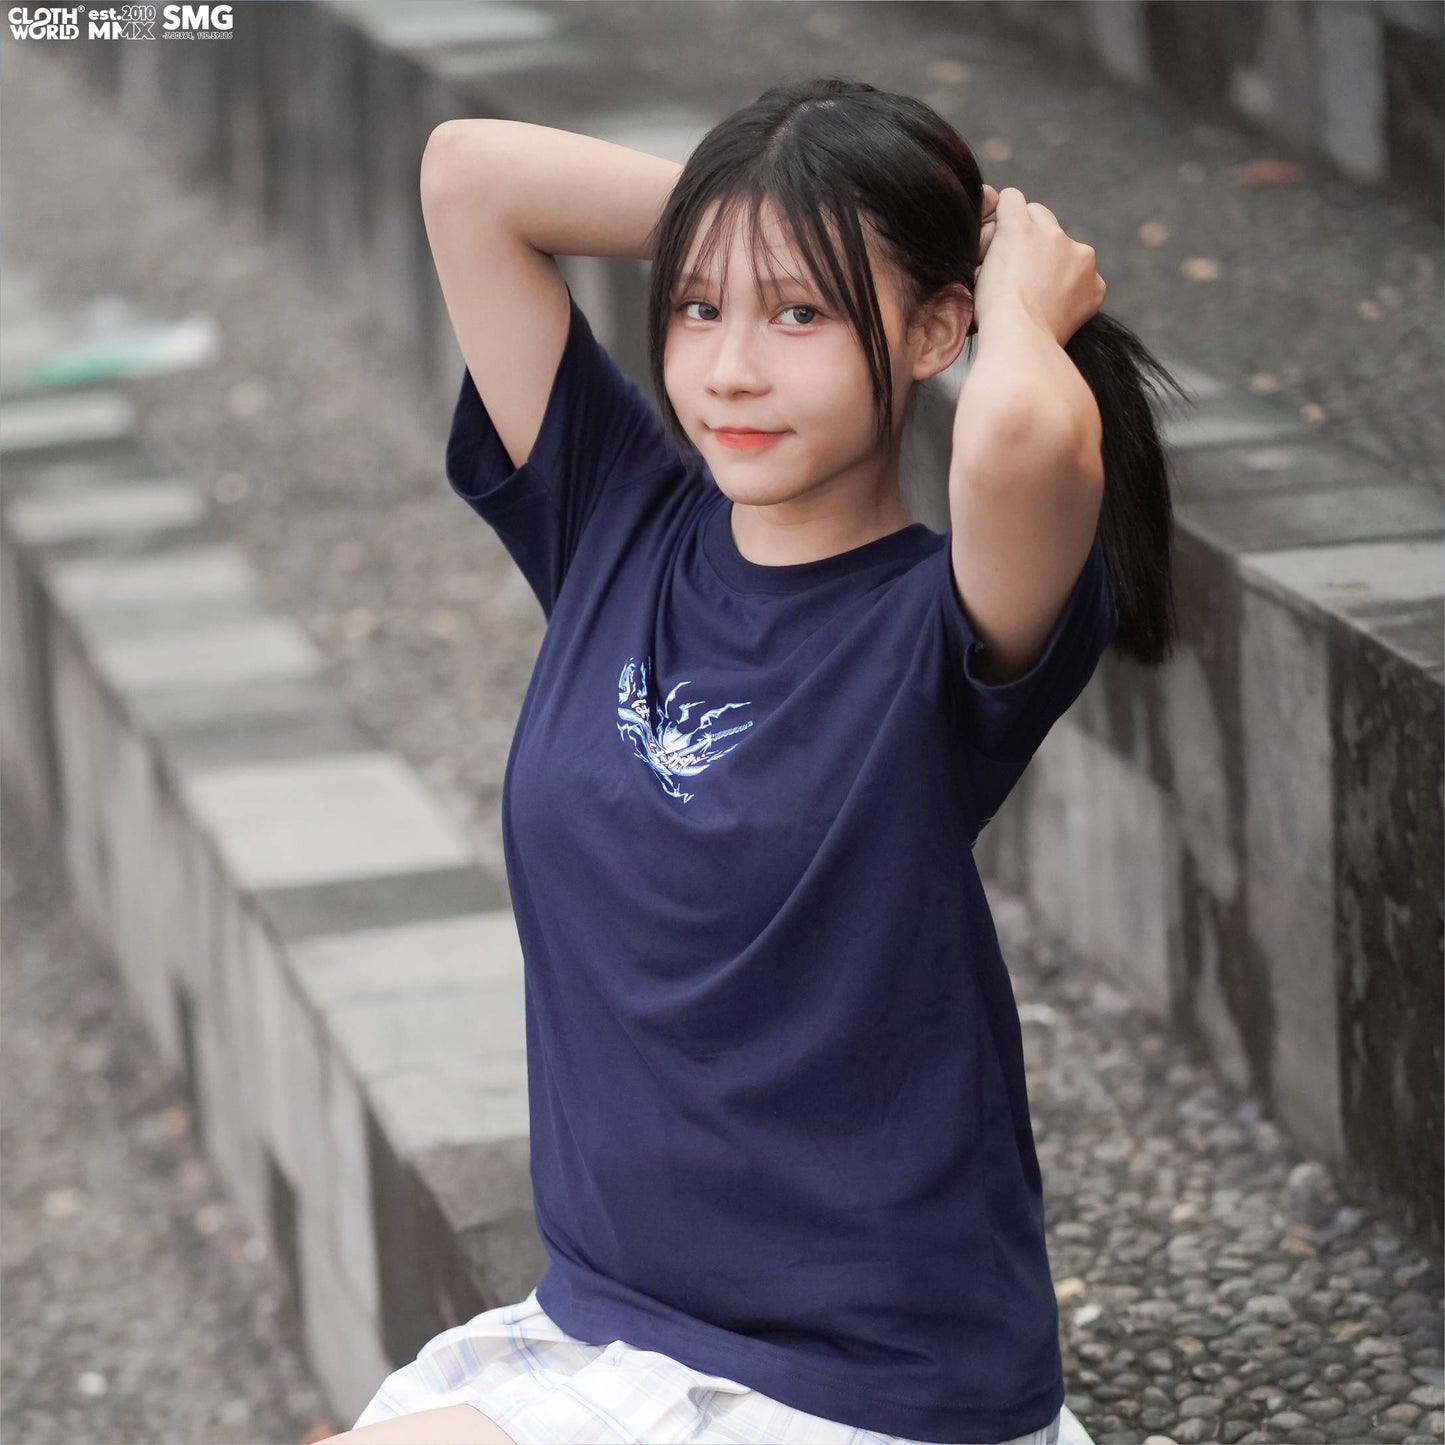 Hatake Kakashi Perfect Susanoo T-Shirt